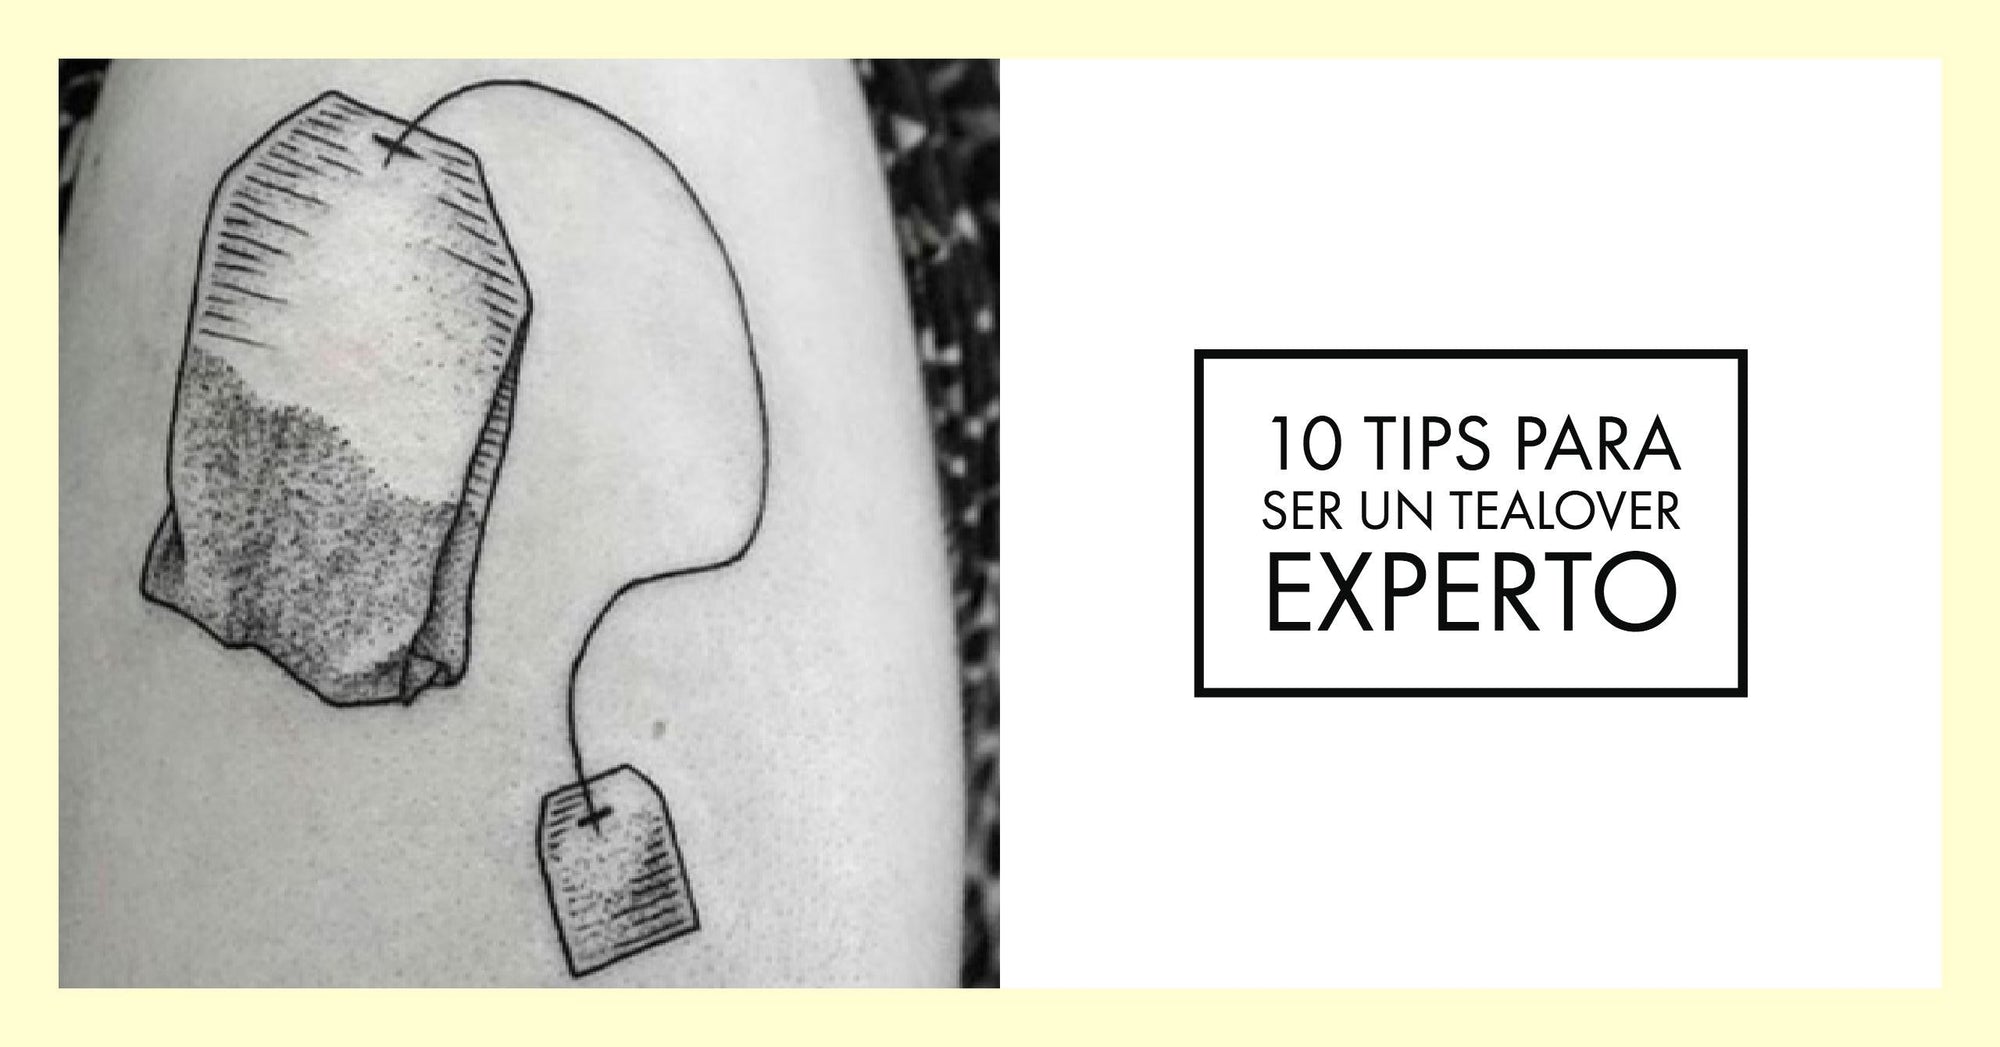 10 Tips para ser un tealover experto